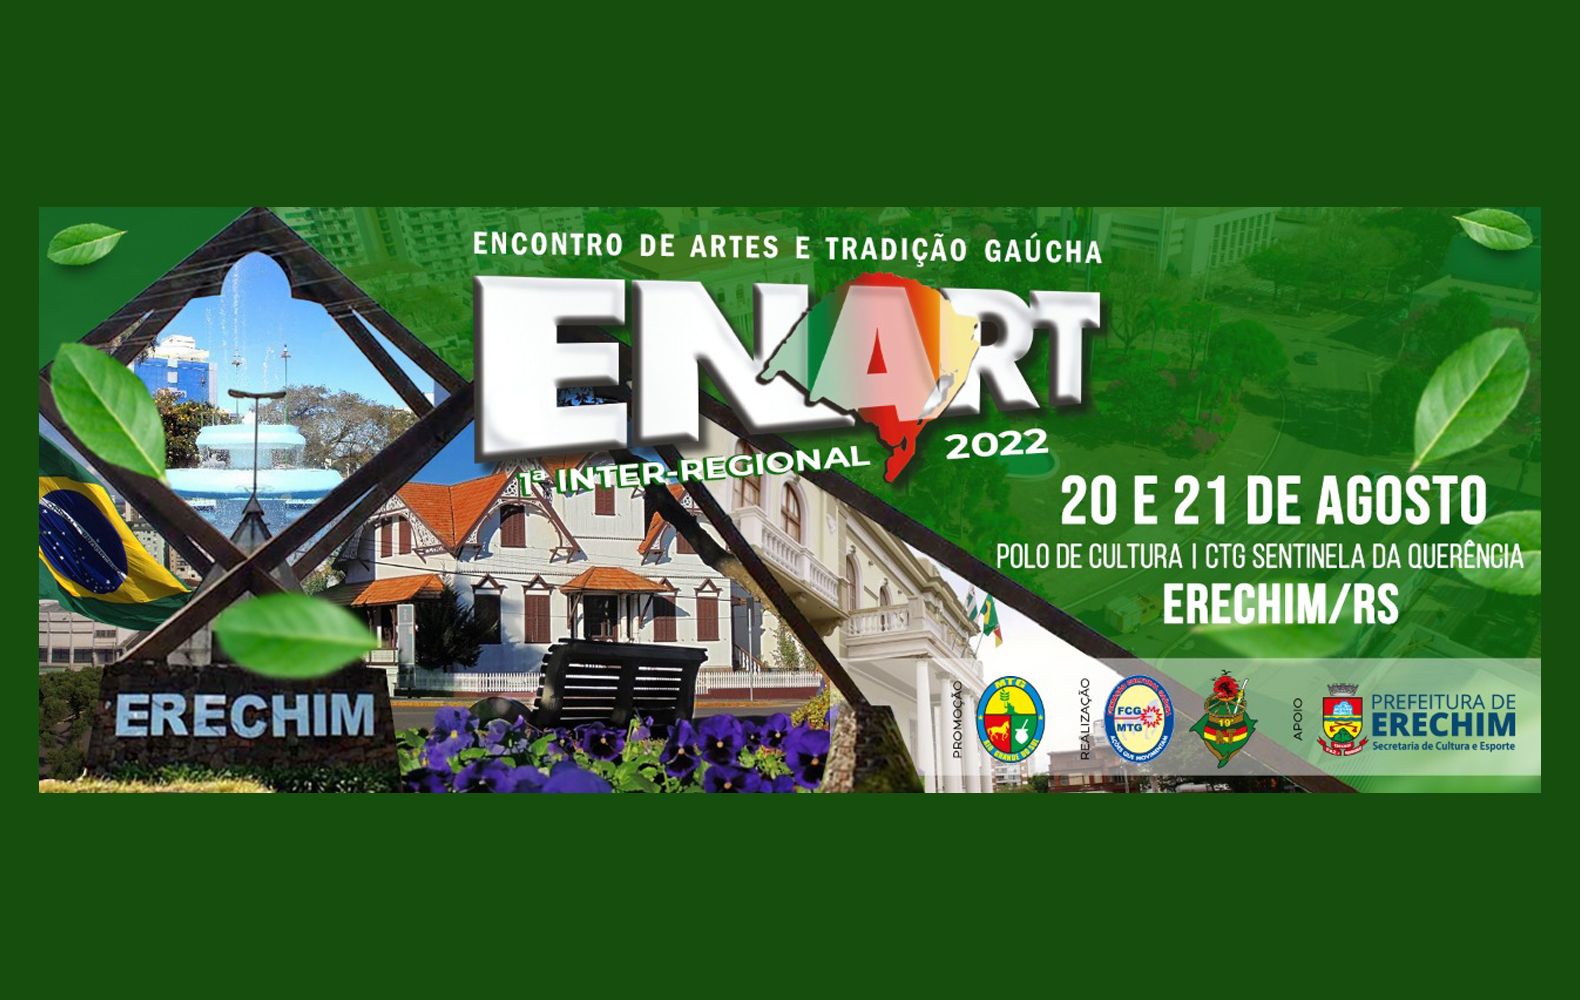 Erechim recebe fase inter regional do Enart neste proximo fim de semana